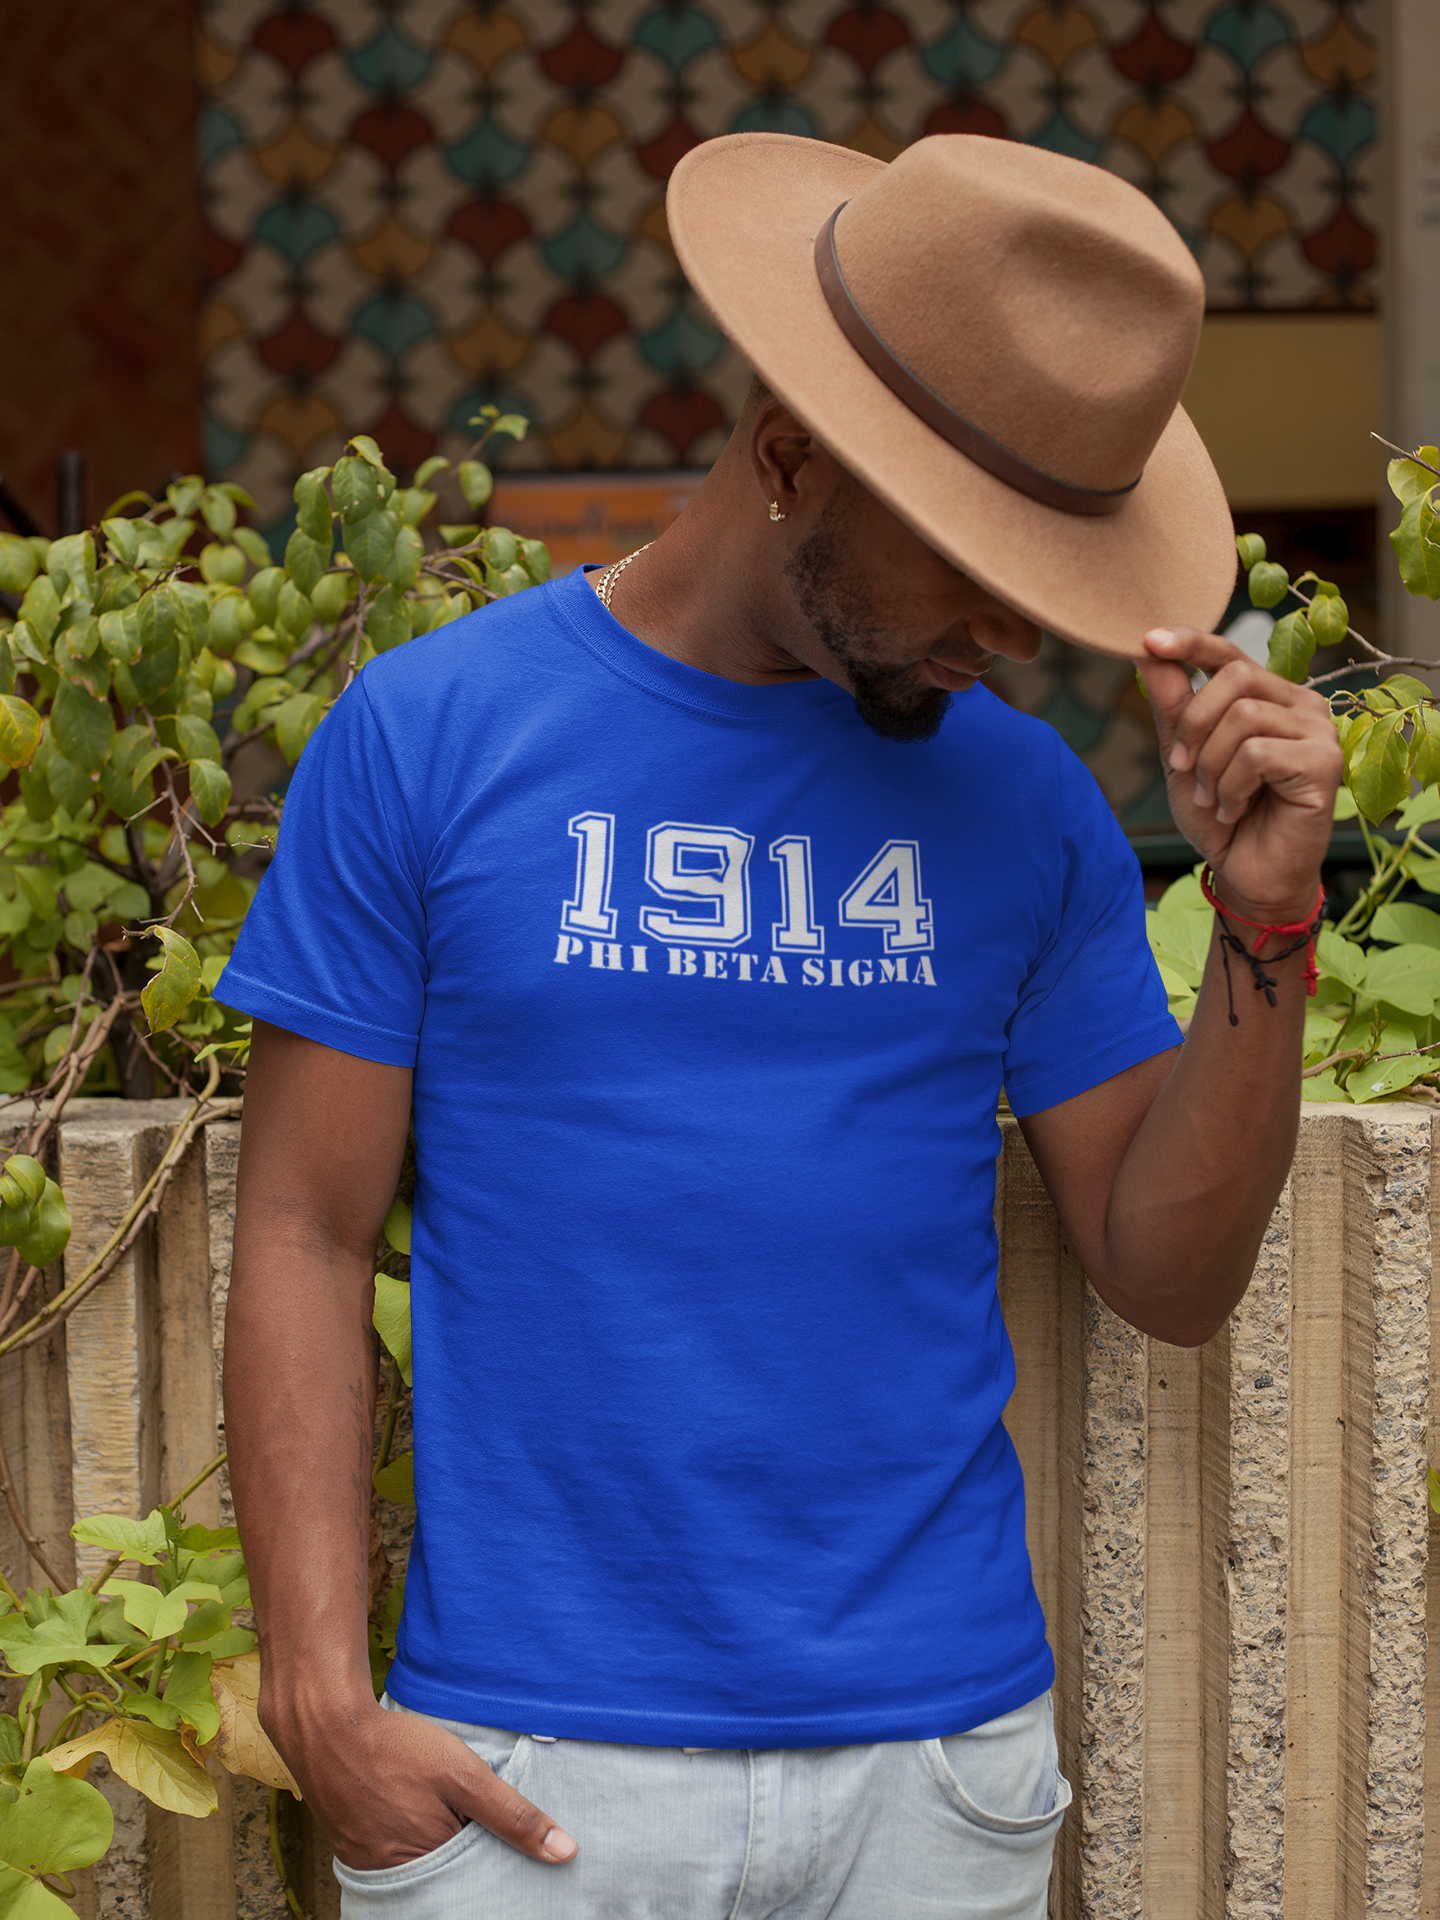 Sigma 1914 Royal T-shirt